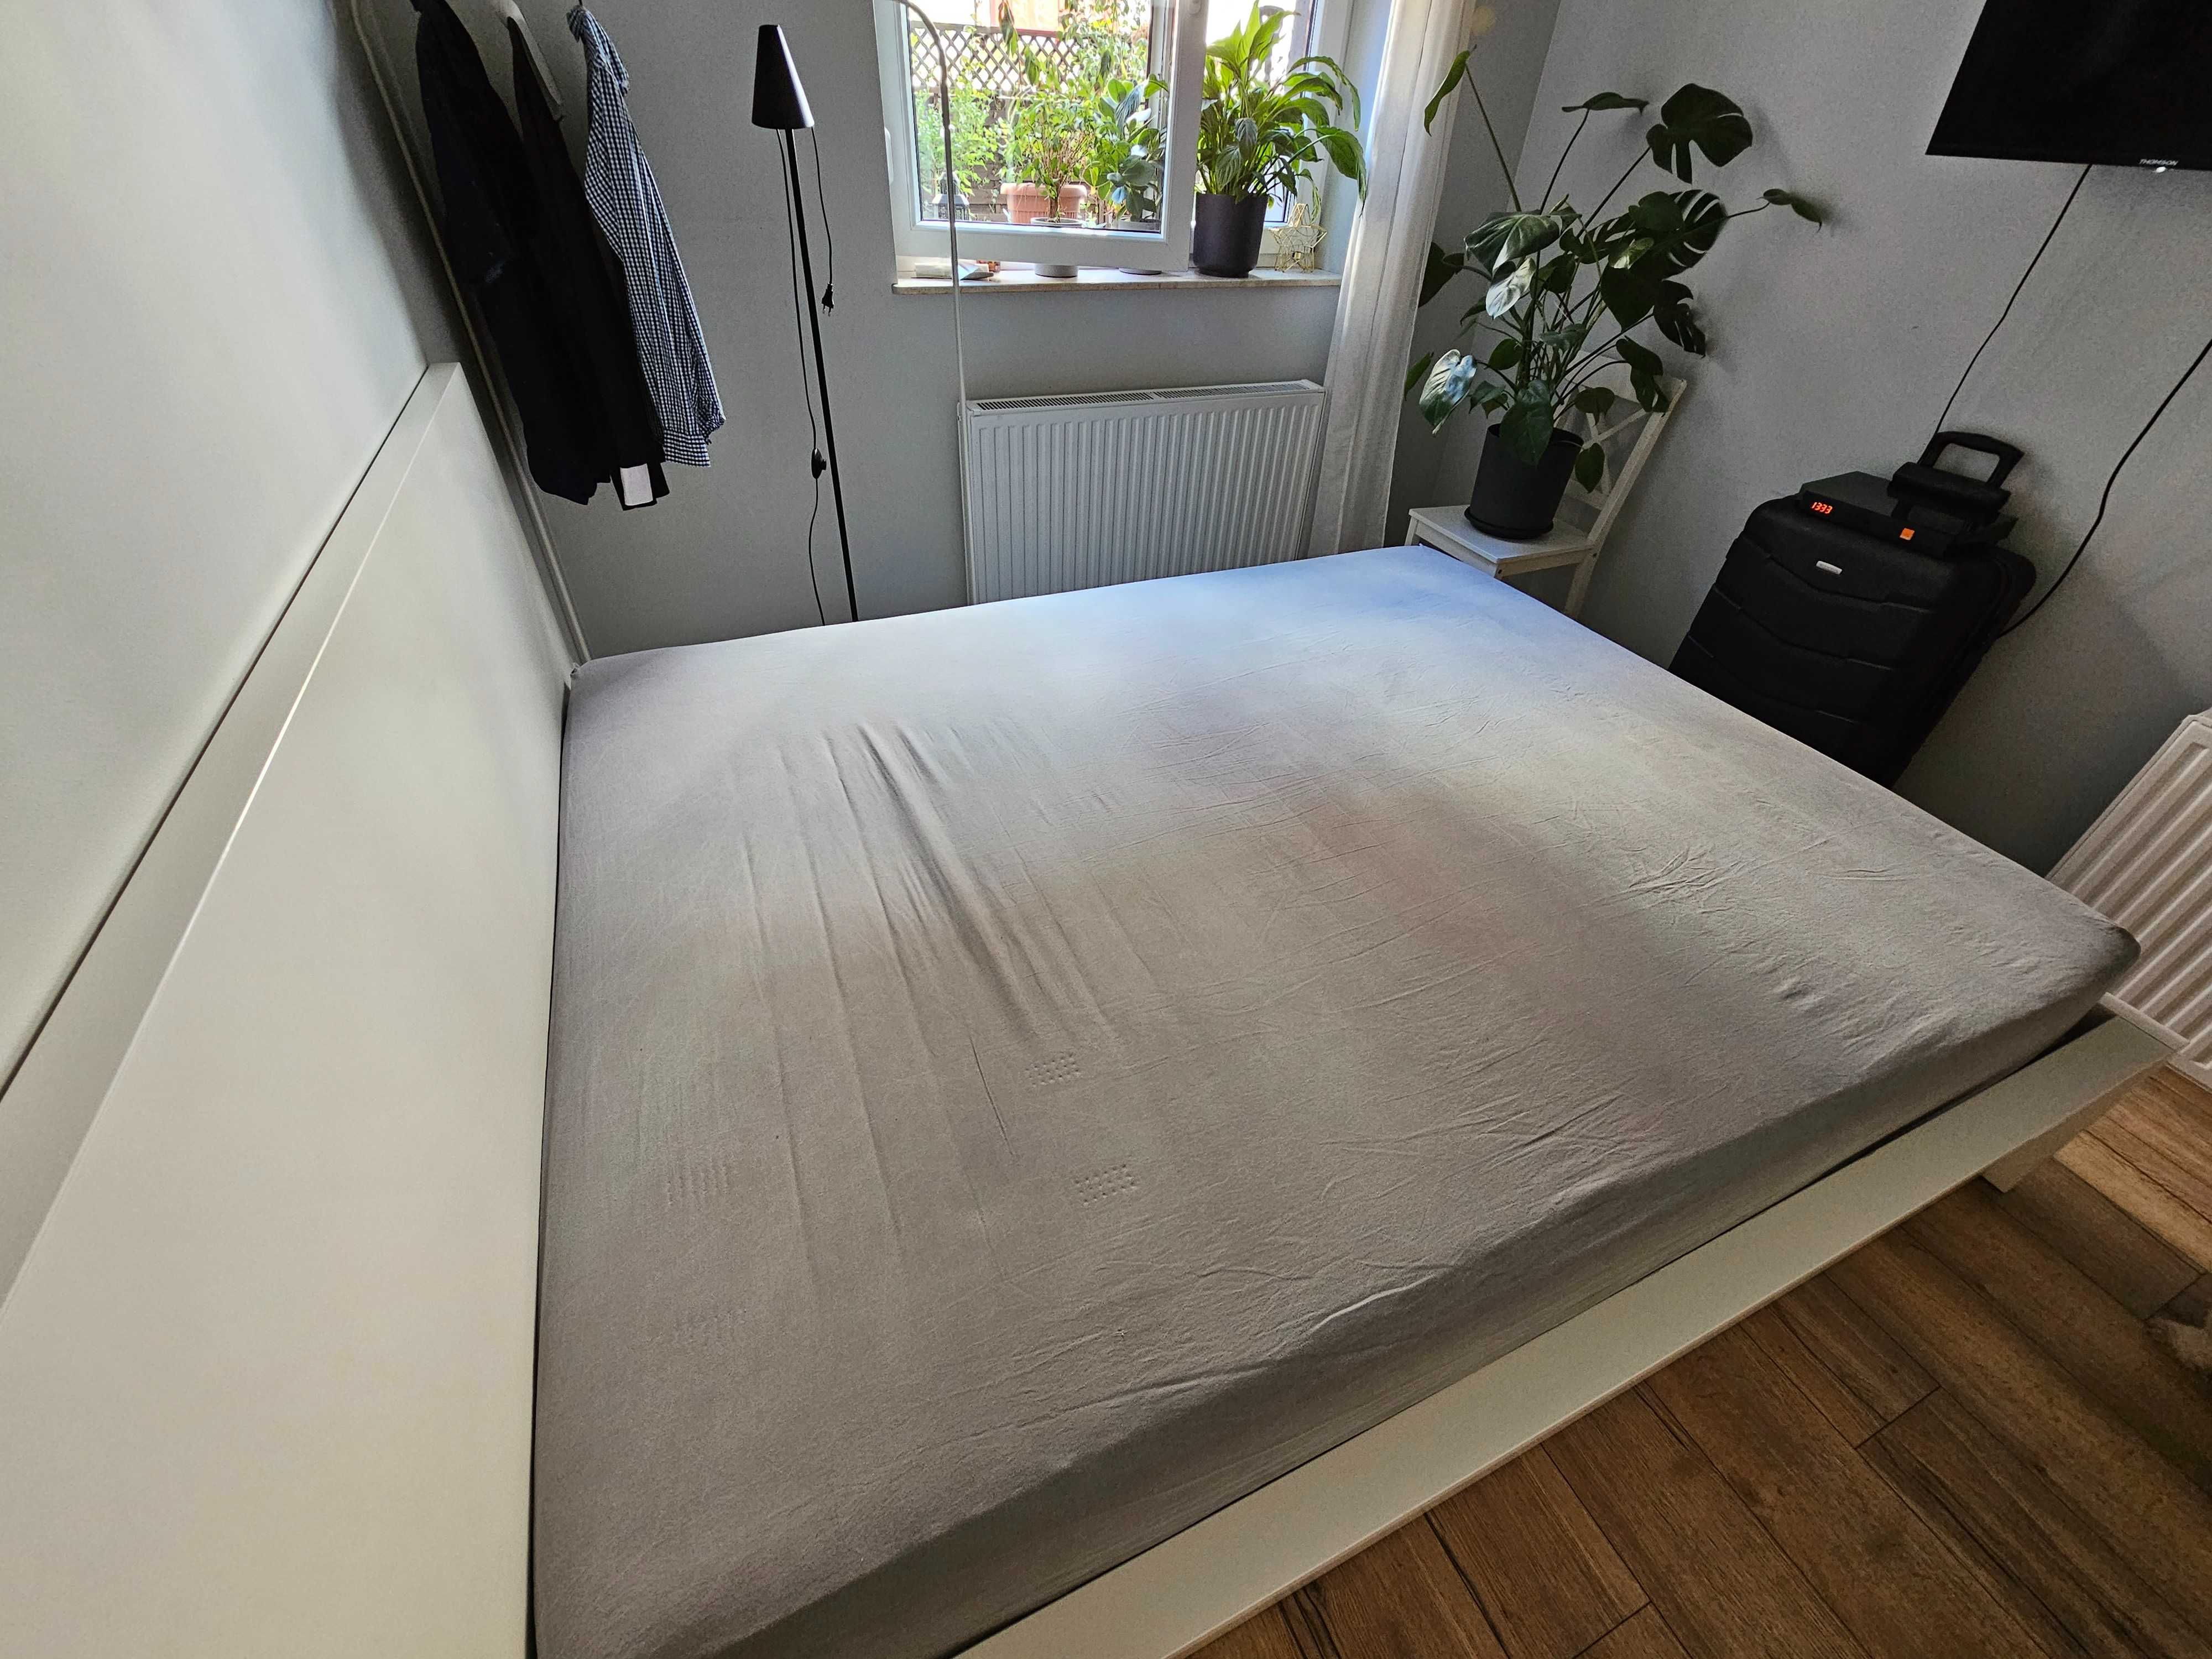 Łóżko otwierane IKEA 207 x 175 cm (duży schowek pod łóżkiem)